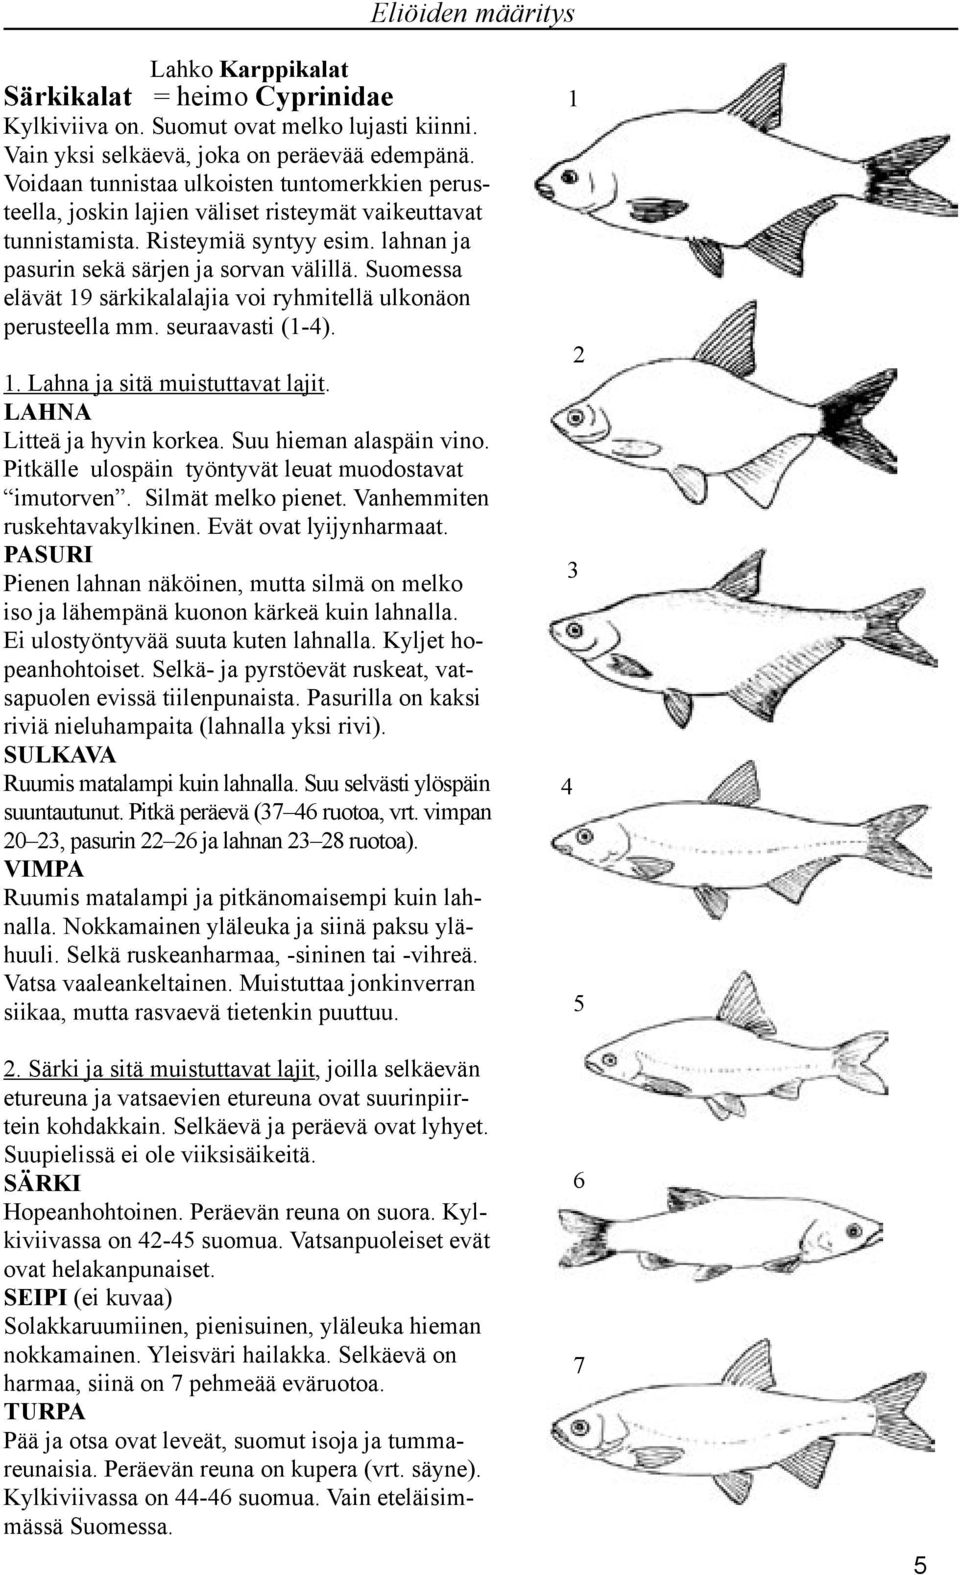 Suomessa elävät 19 särkikalalajia voi ryhmitellä ulkonäon perusteella mm. seuraavasti (1-). 1. Lahna ja sitä muistuttavat lajit. LAHNA Litteä ja hyvin korkea. Suu hieman alaspäin vino.